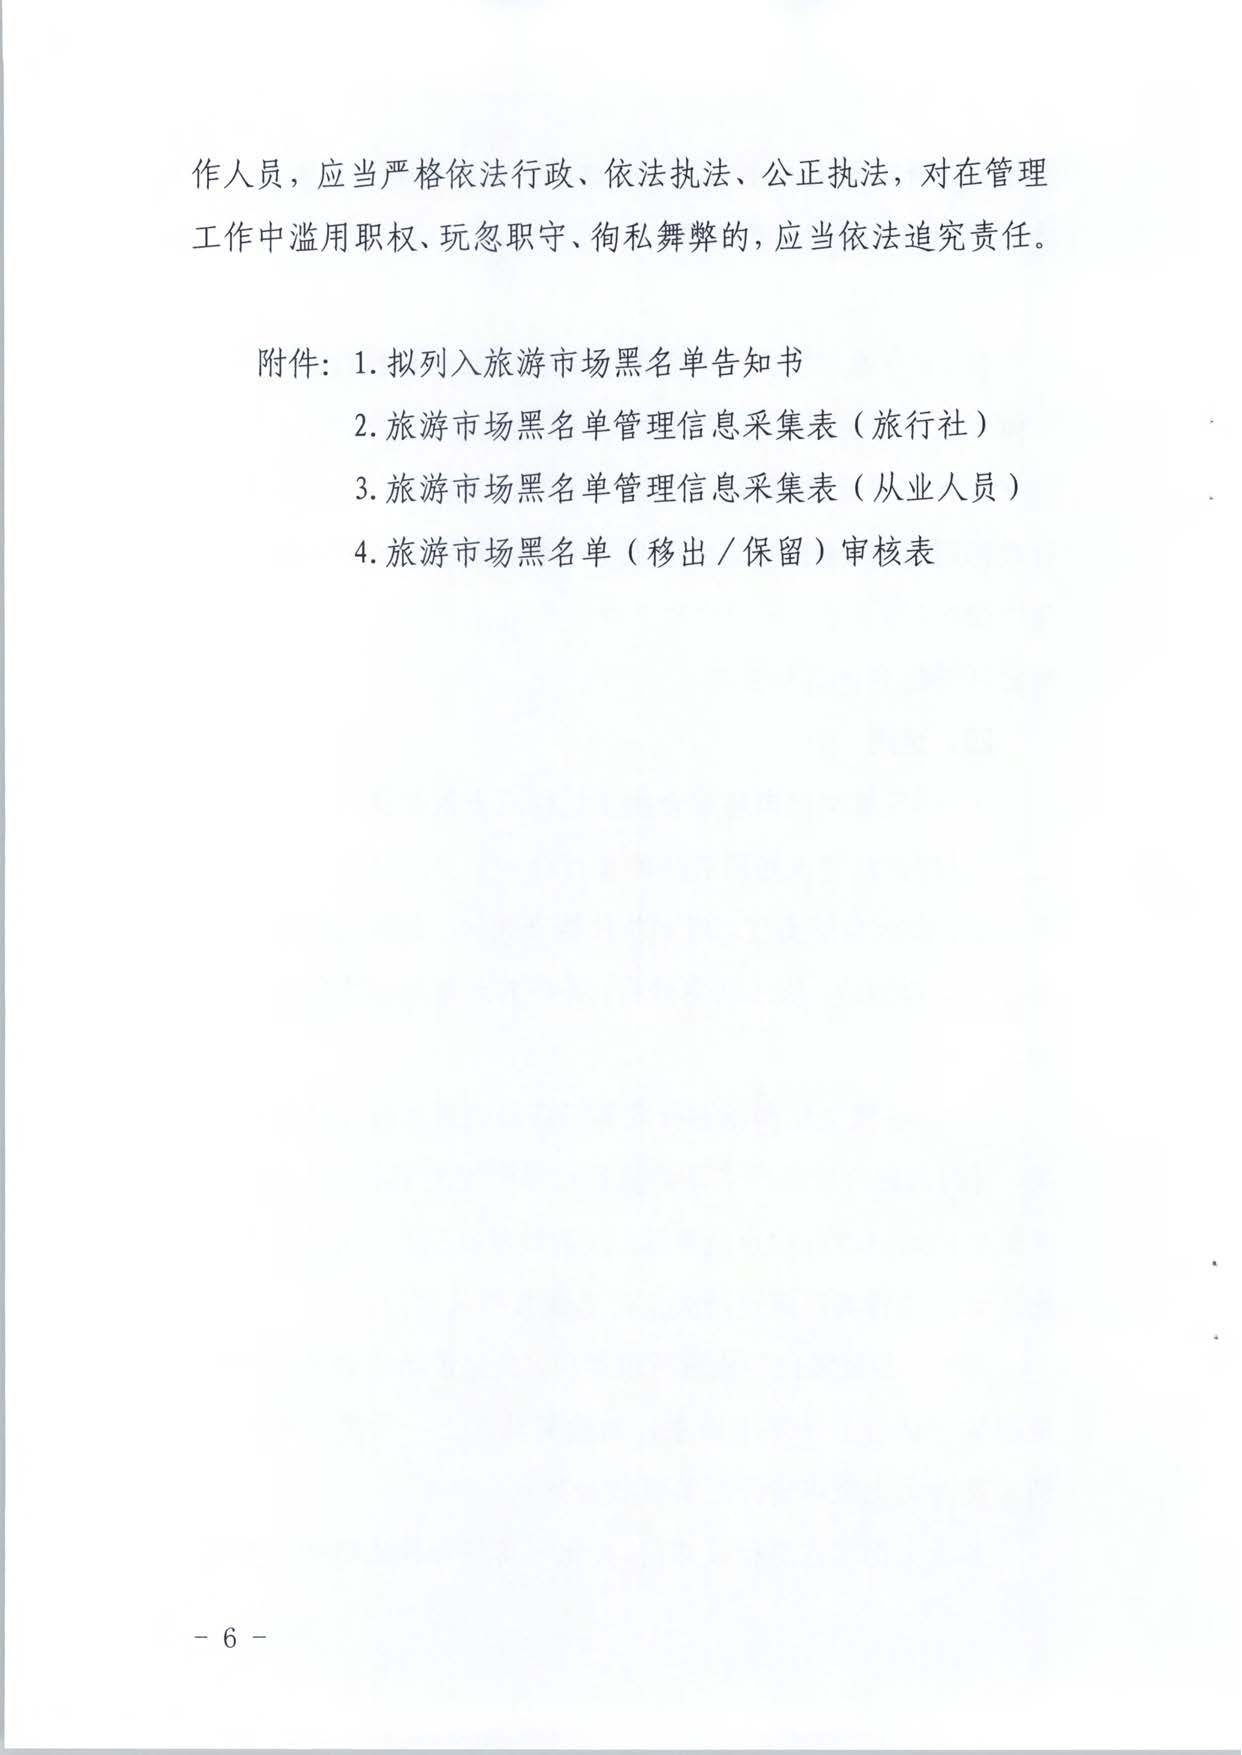 广东省文化和旅游厅关于推进文化和旅游市场信用修复工作的通知_页面_25.jpg